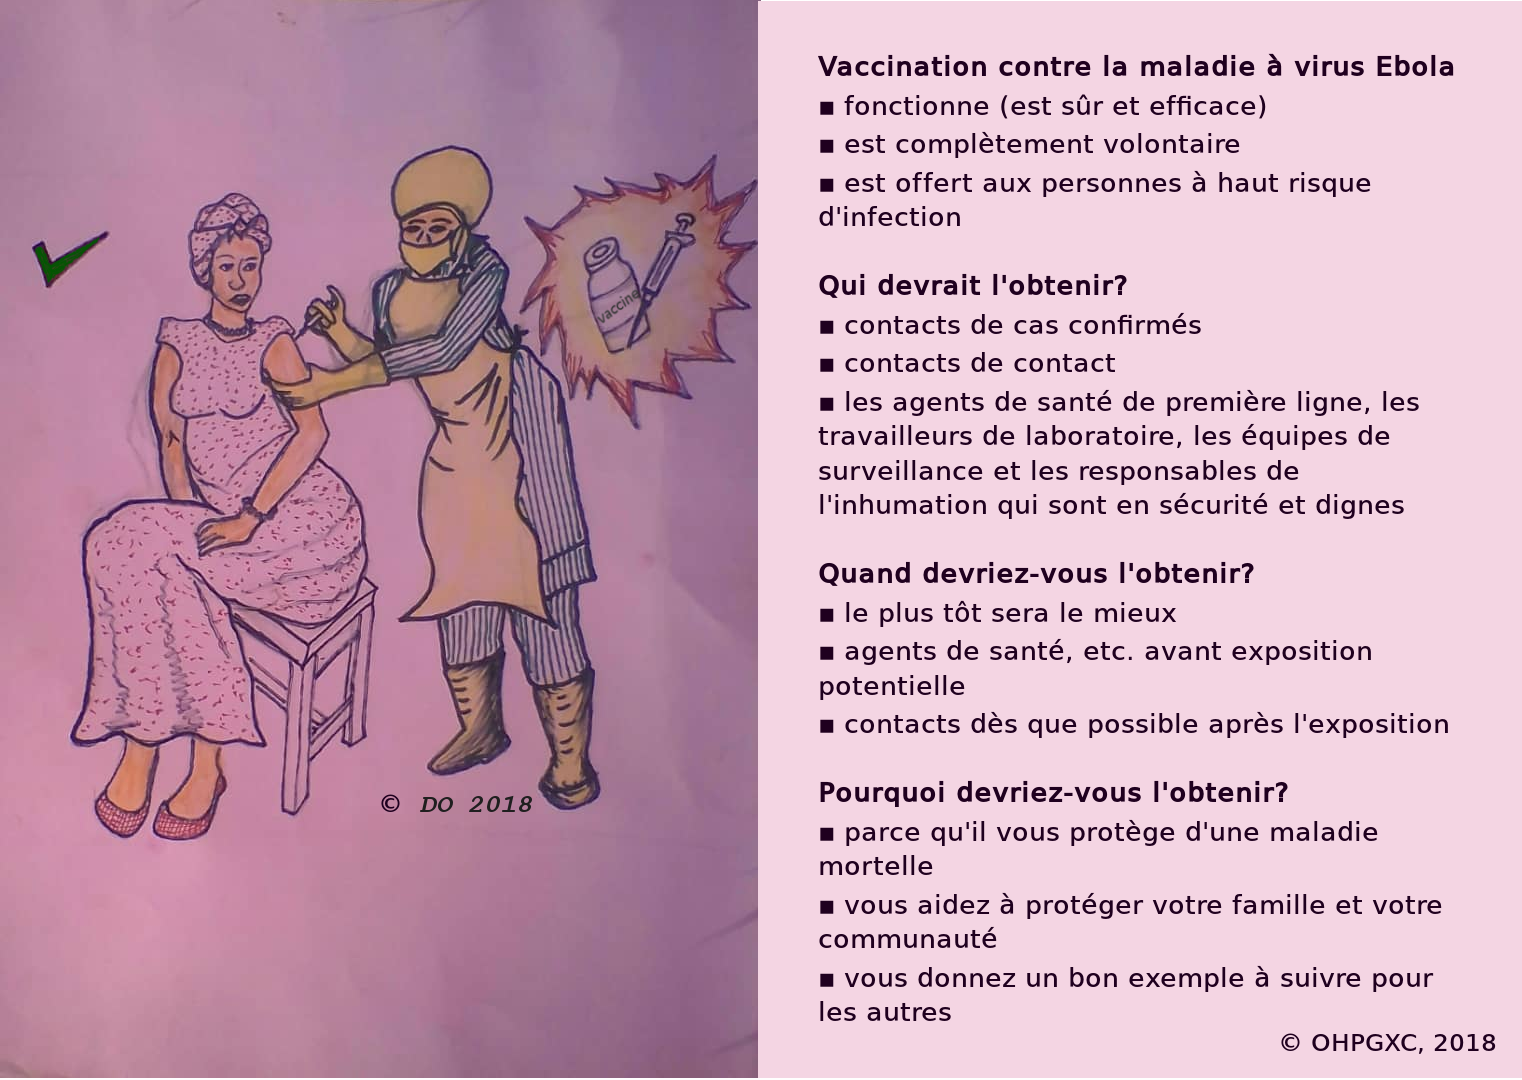 La vaccination protège contre la maladie à virus Ebola